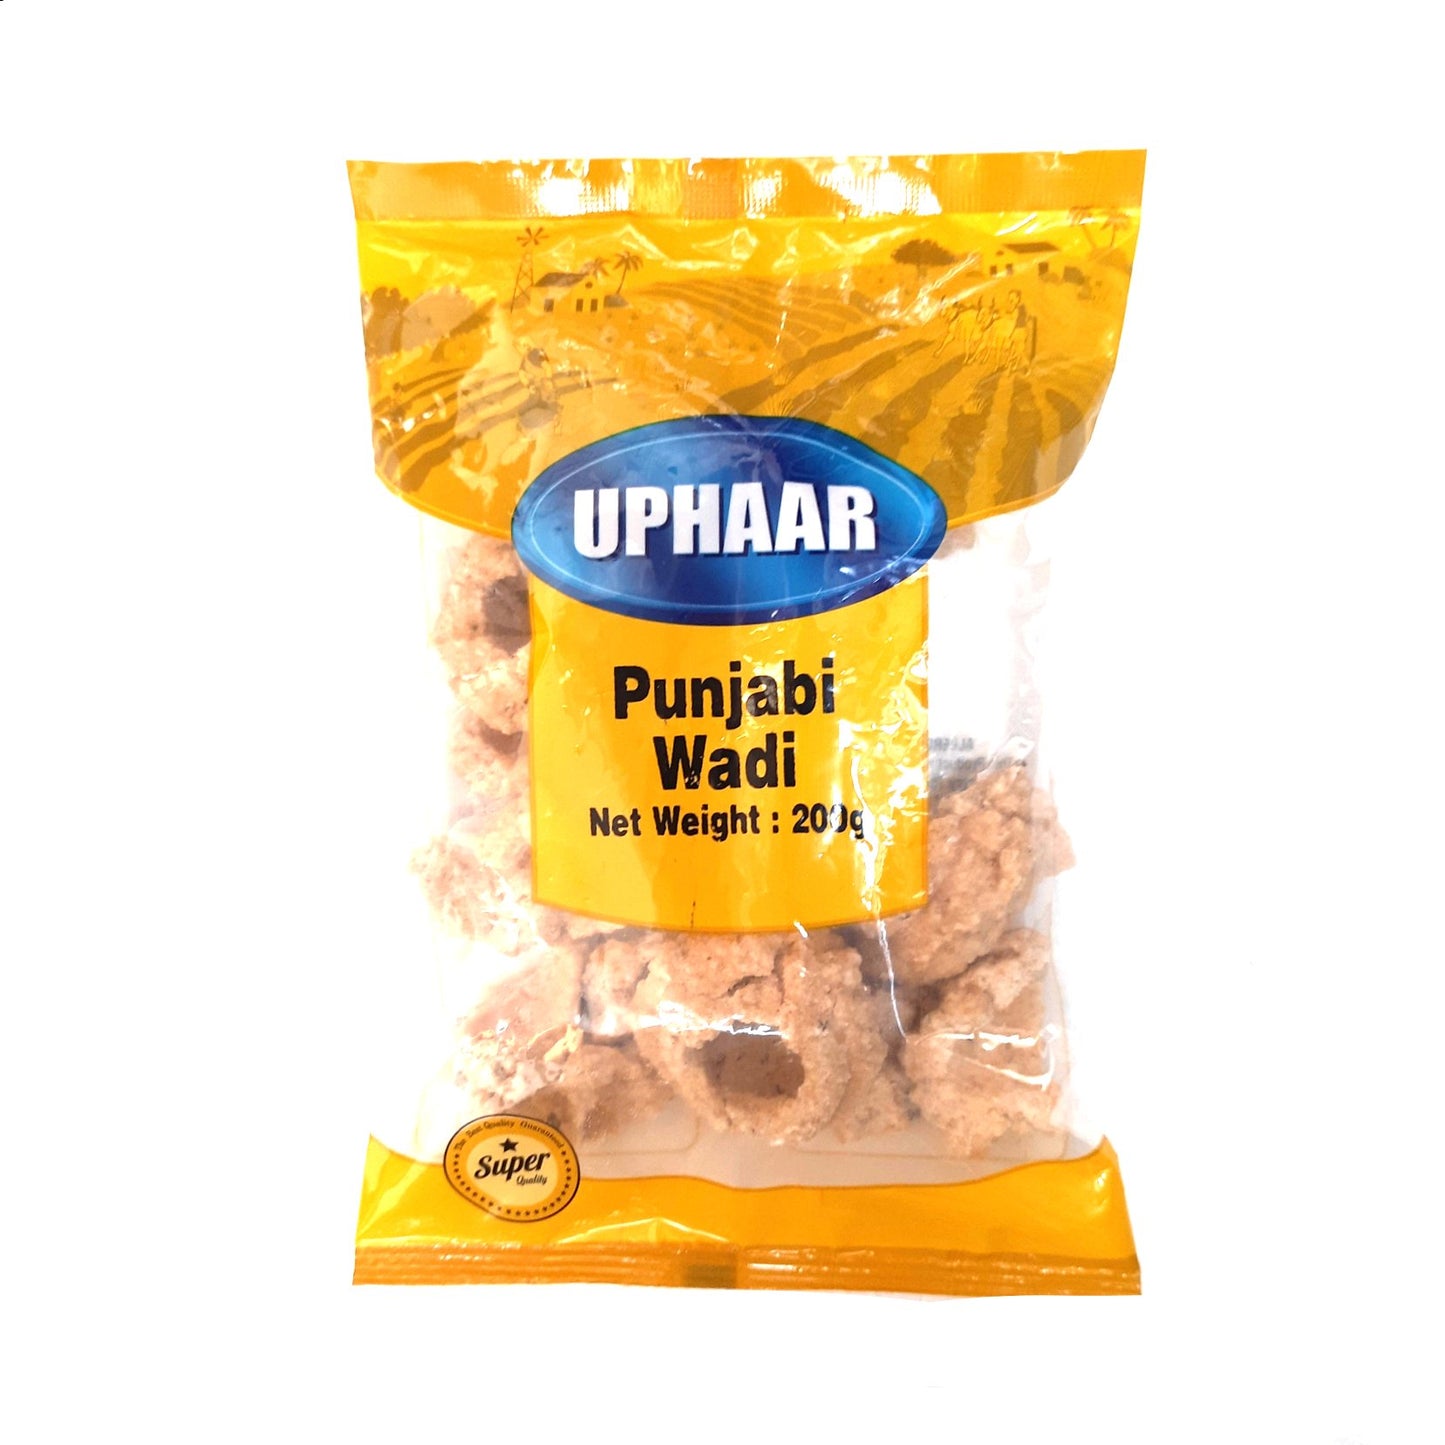 Uphaar Punjabi Vadi 200g